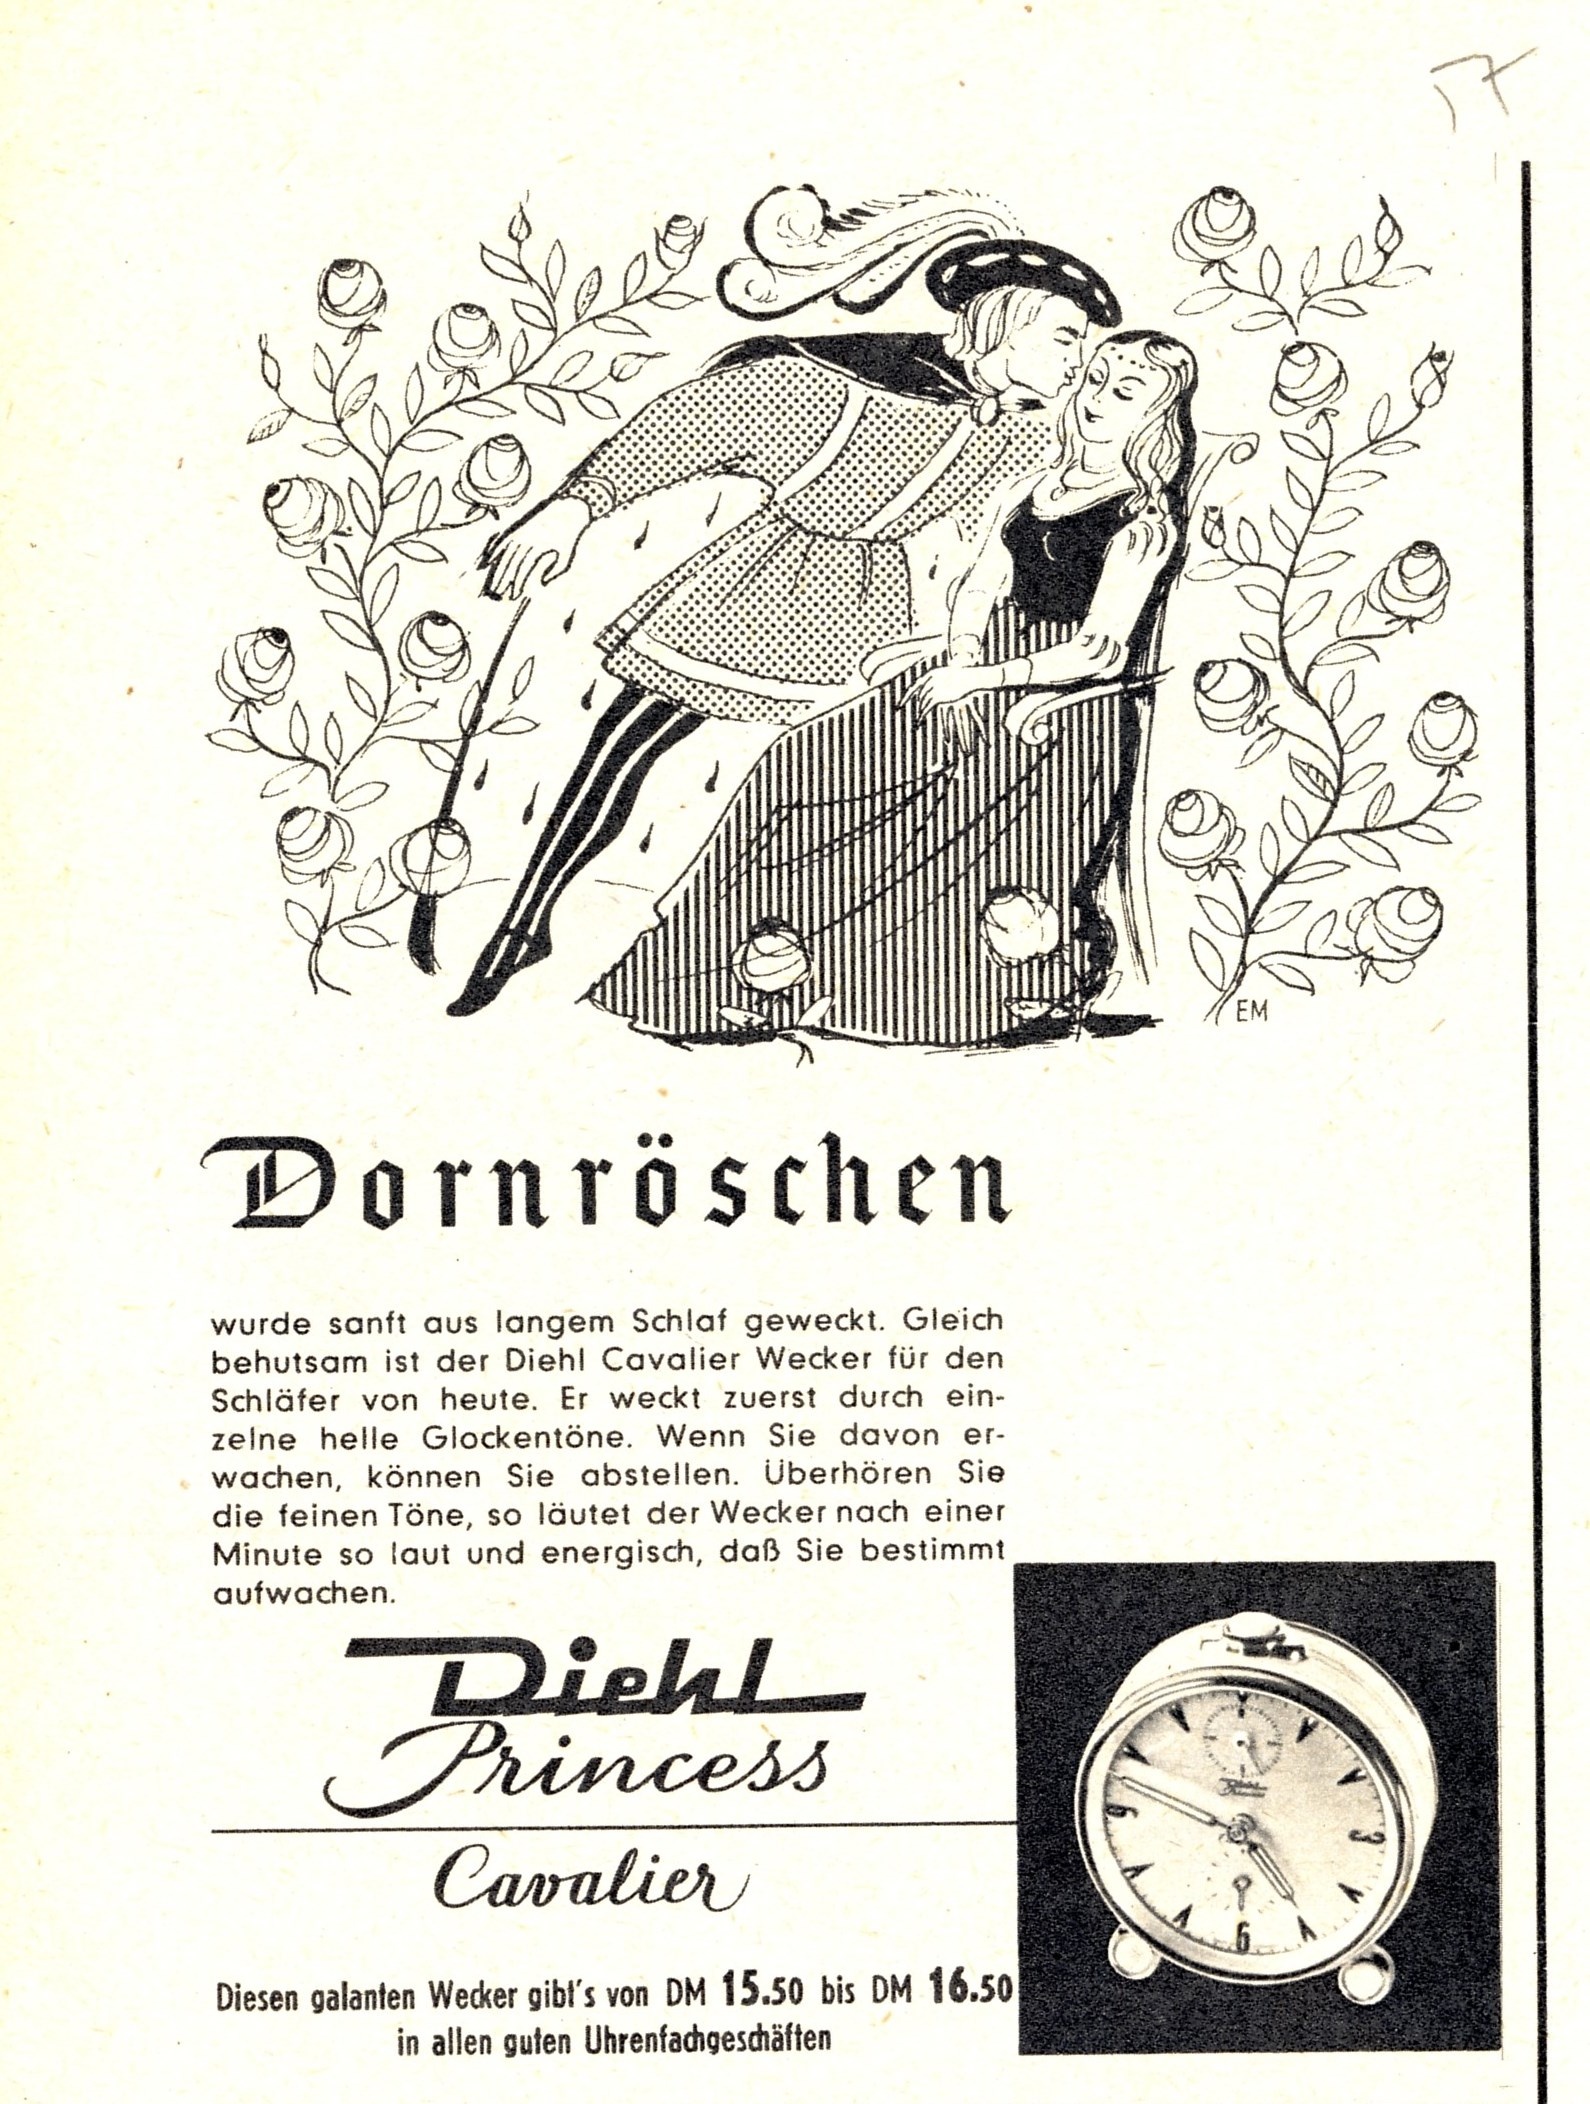 Dornröschen wirbt für einen Wecker (Deutsches Märchen- und Wesersagenmuseum  CC BY-NC-SA)